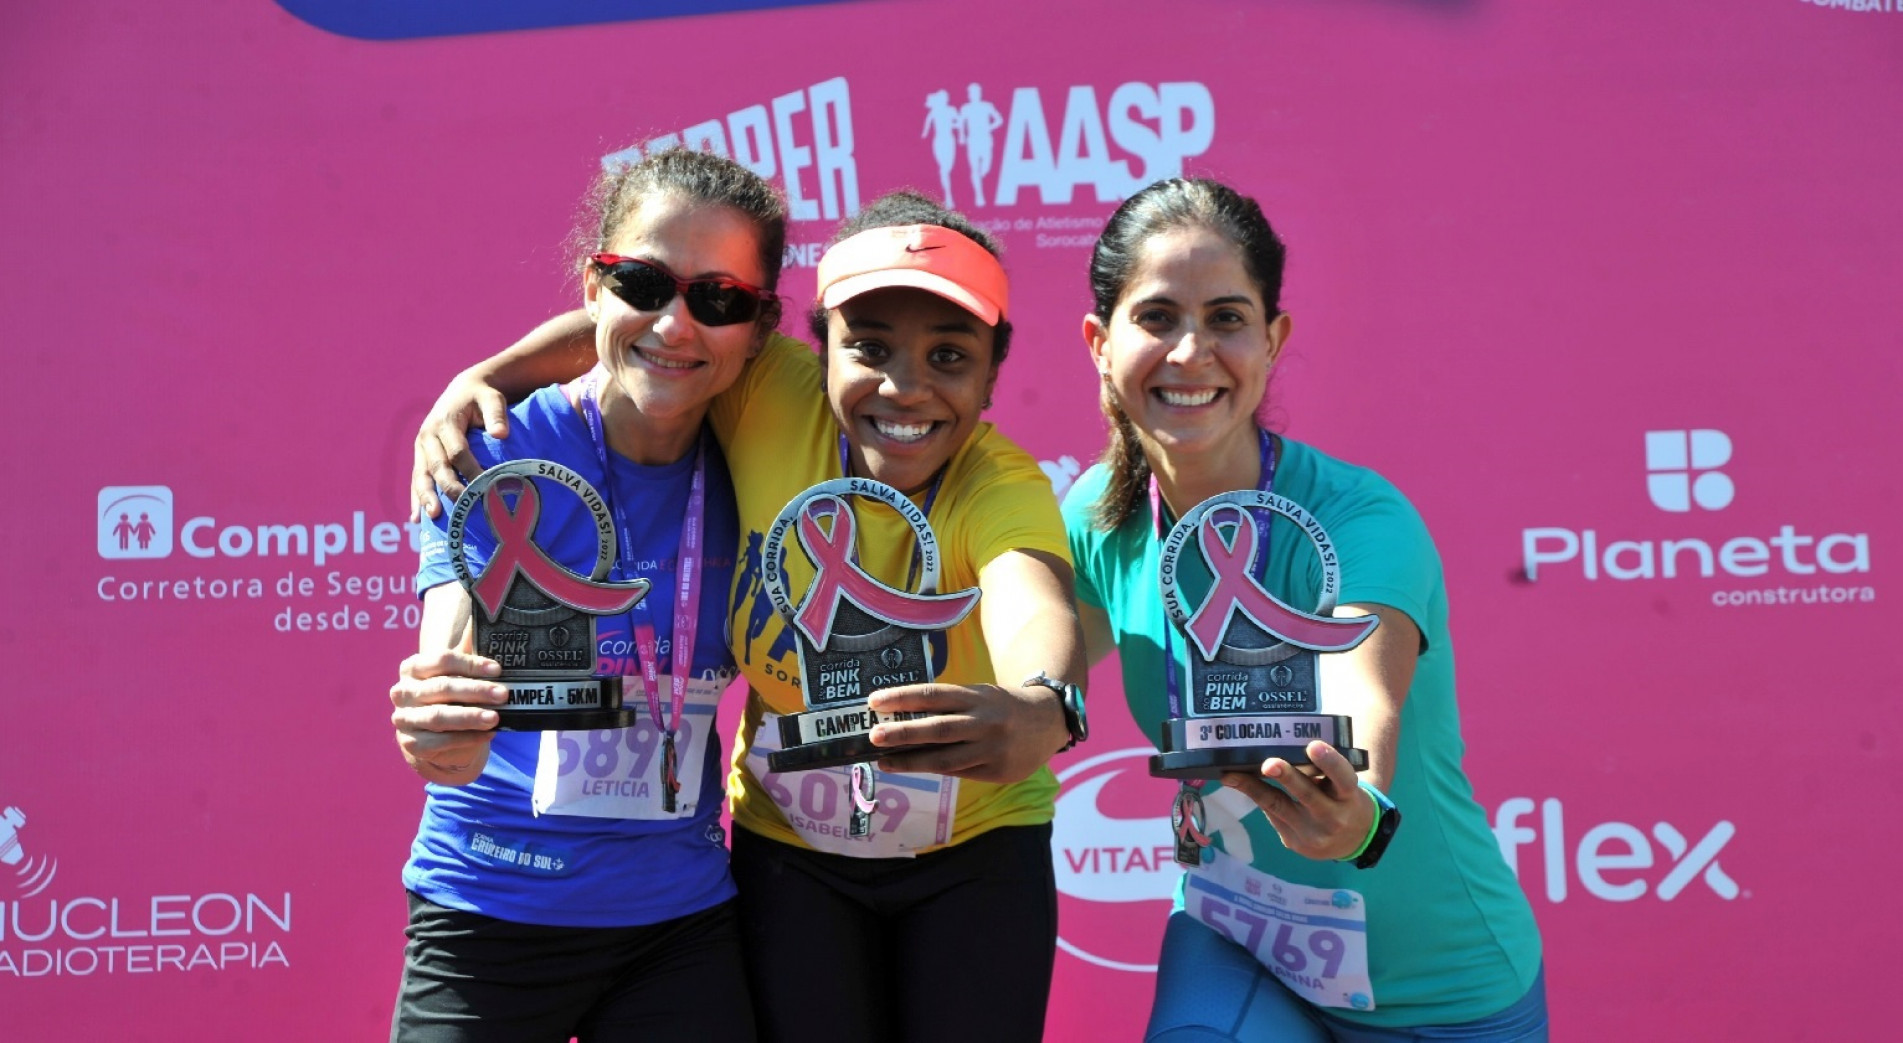 Vencedoras da corrida Pink do Bem Ossel Assistência